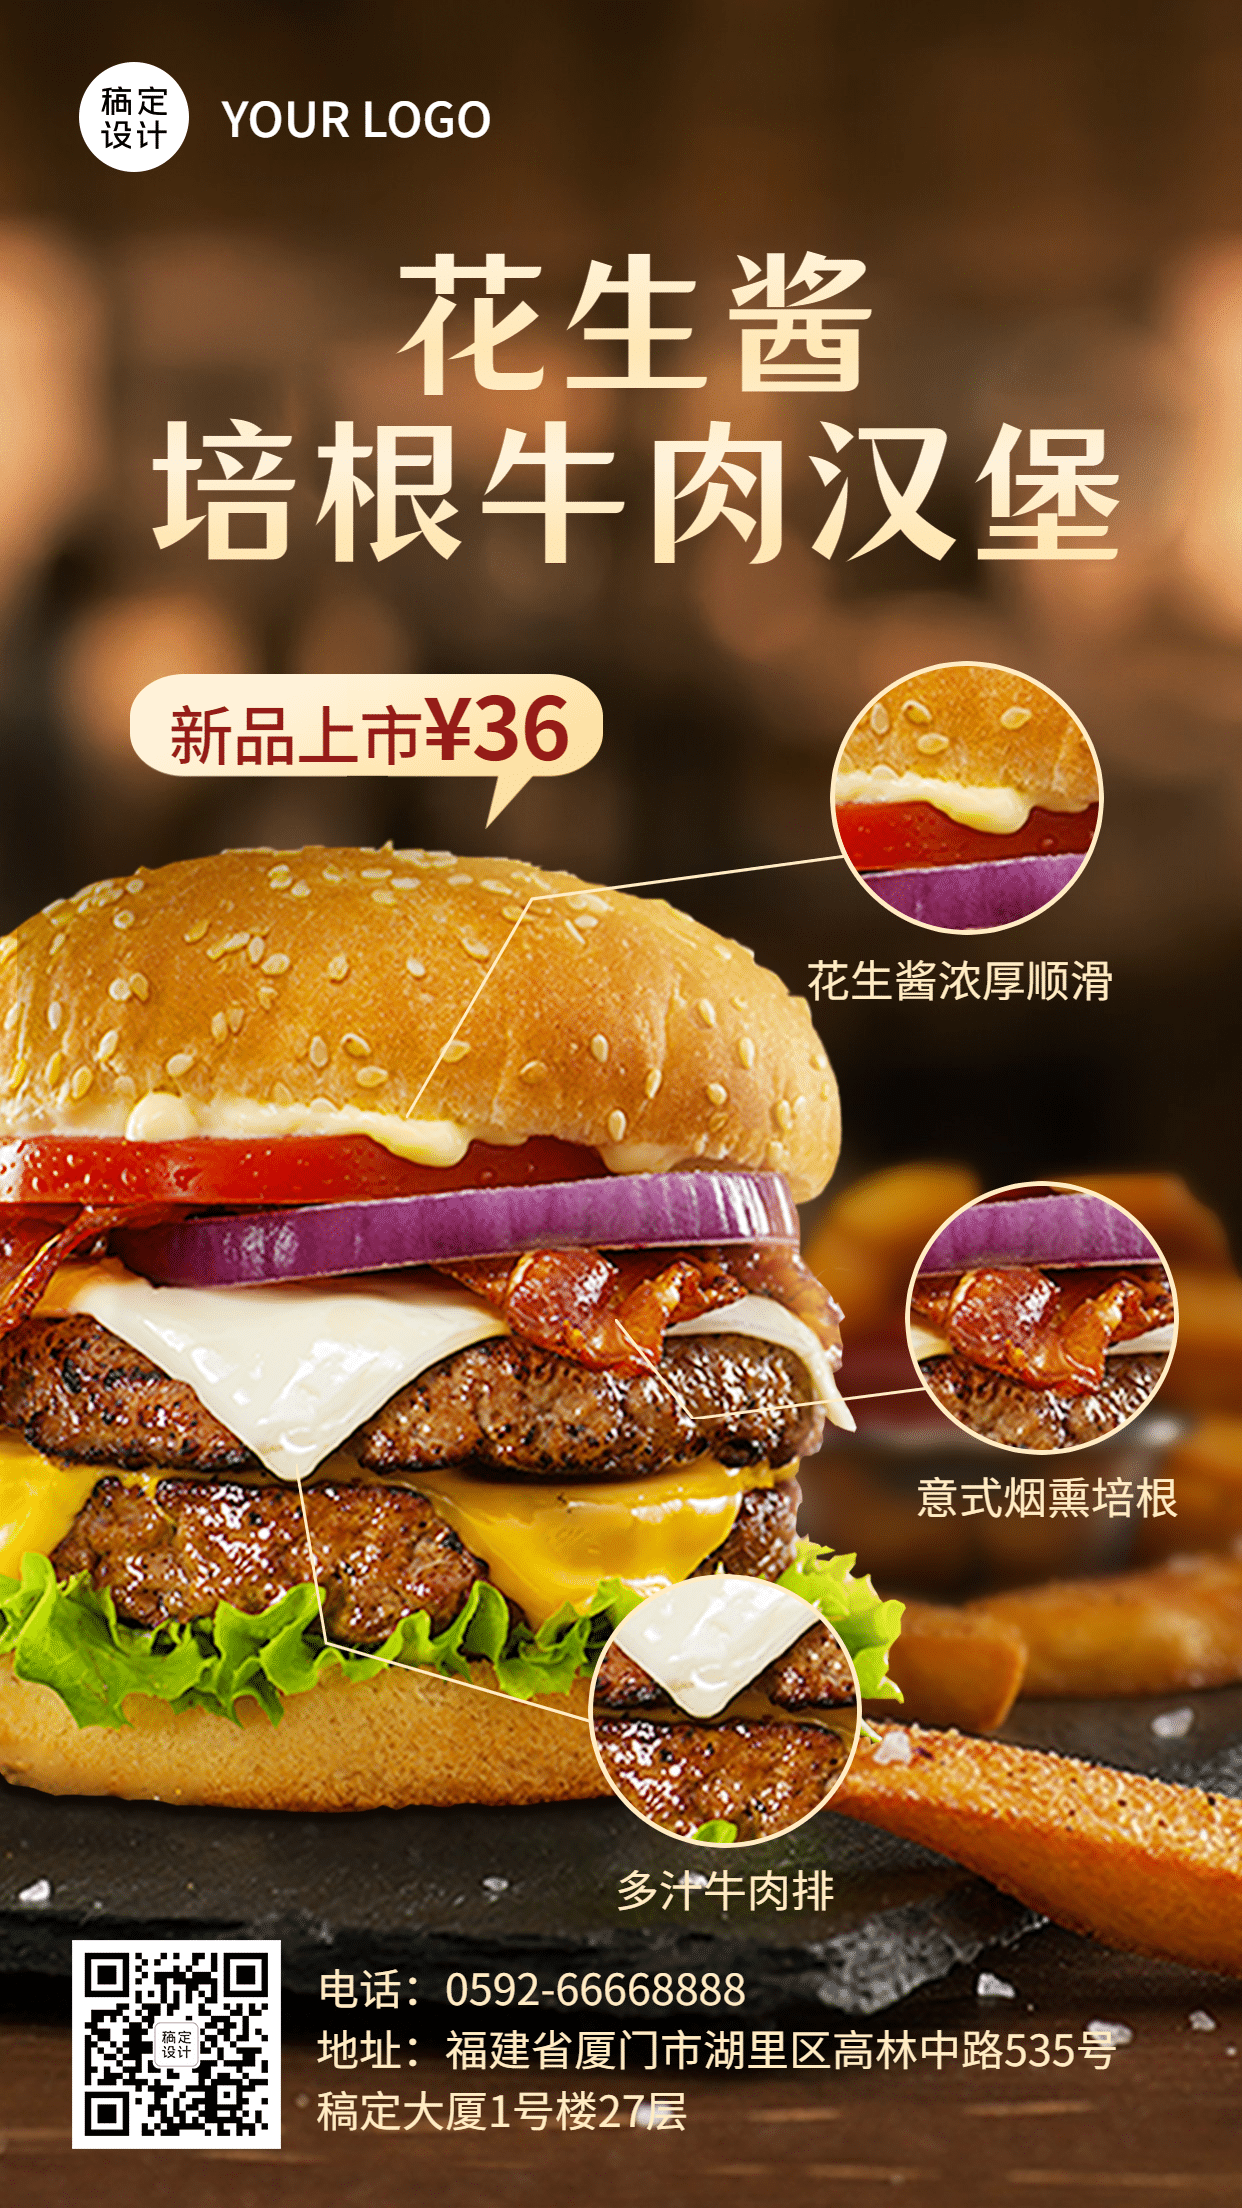 西餐汉堡促销活动实景手机海报